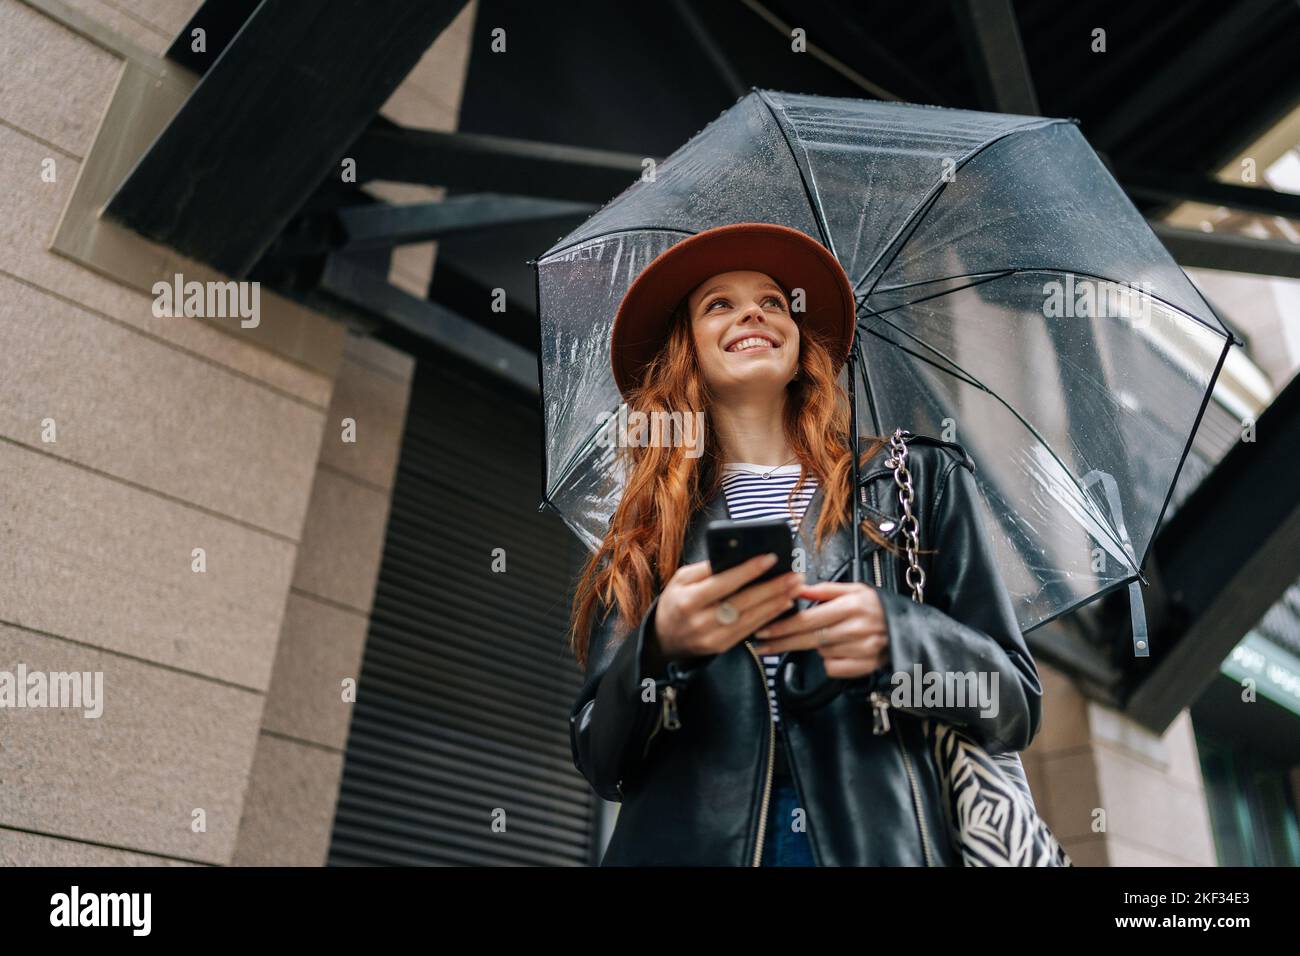 Vue en contre-angle de positive gingembre jeune femme portant un chapeau élégant en dactylographiant smartphone en regardant loin debout avec parapluie transparent Banque D'Images